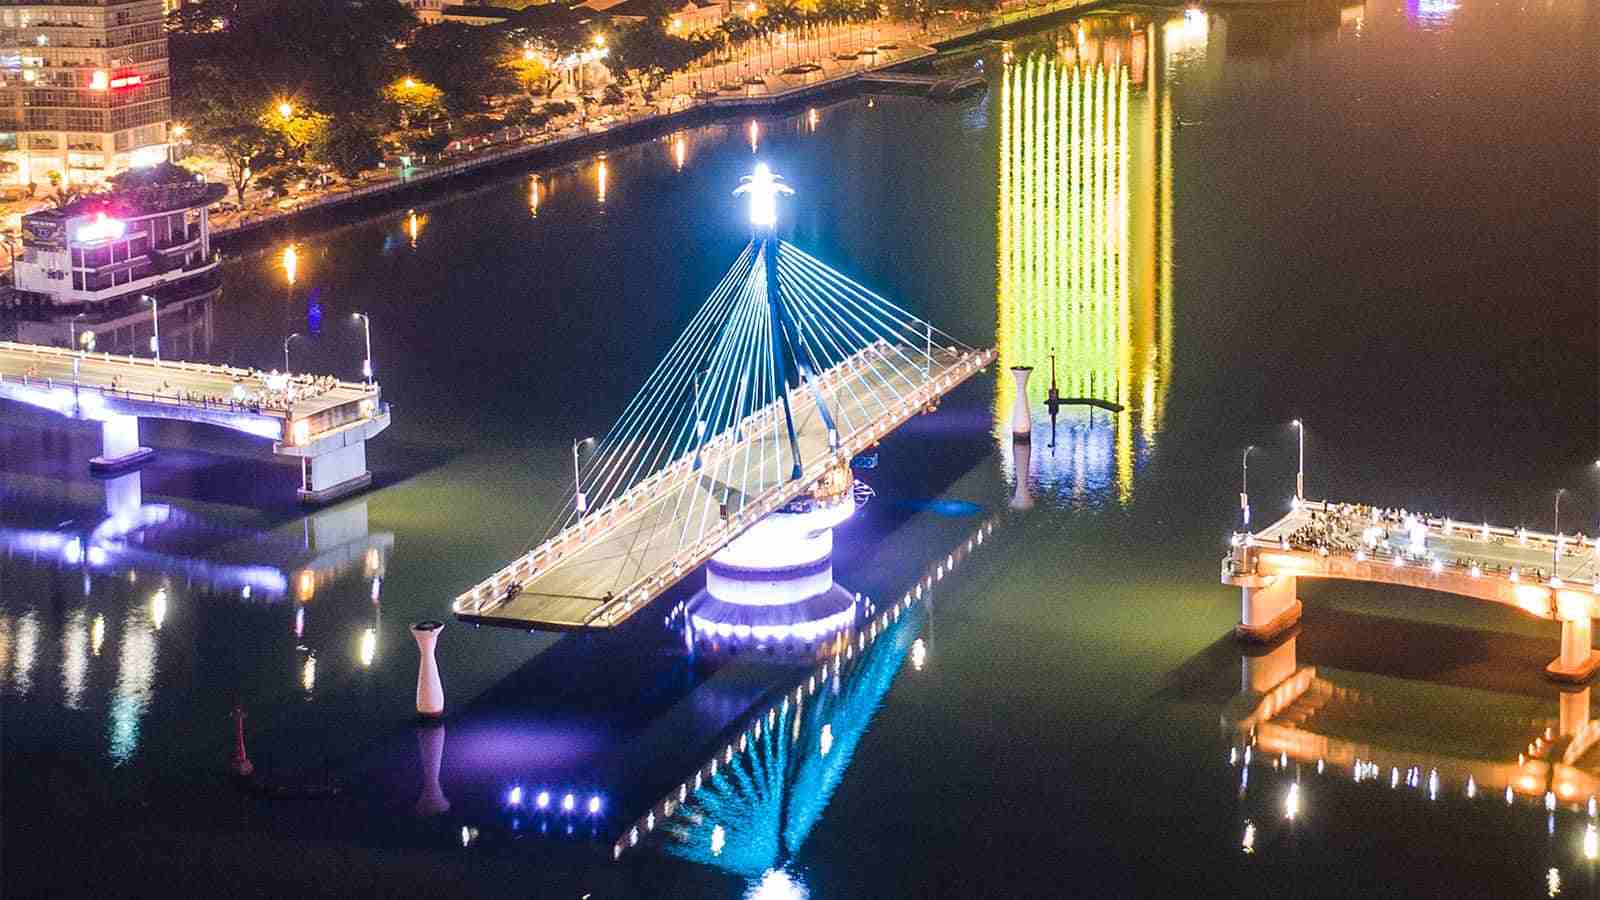 Cầu sông Hàn về đêm